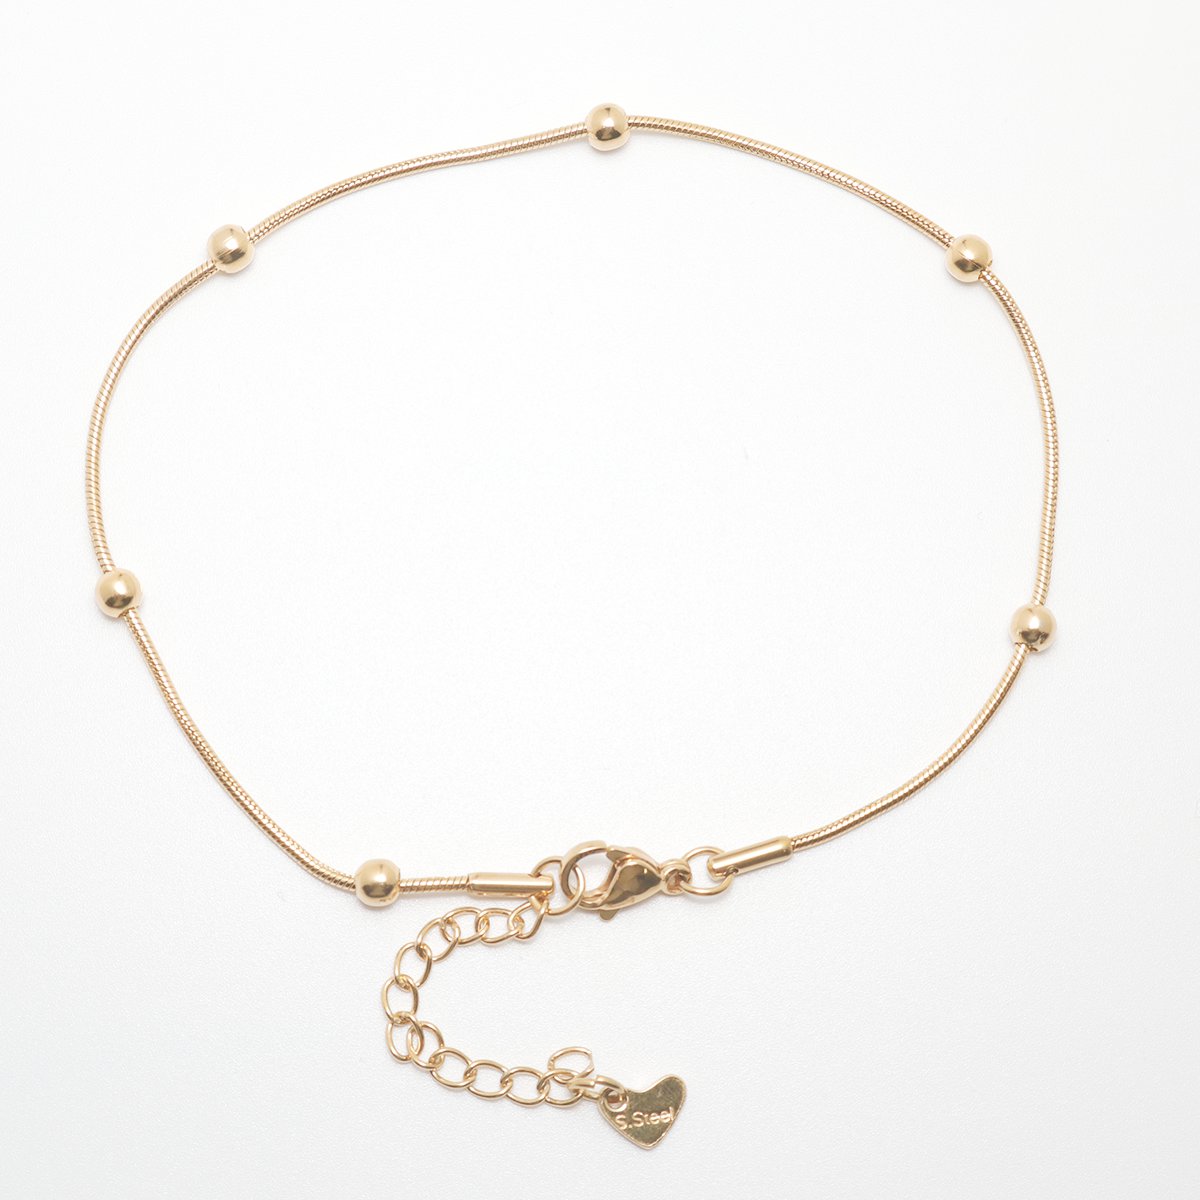 Stainless-Steel Women’s Chain Anklet Bracelet